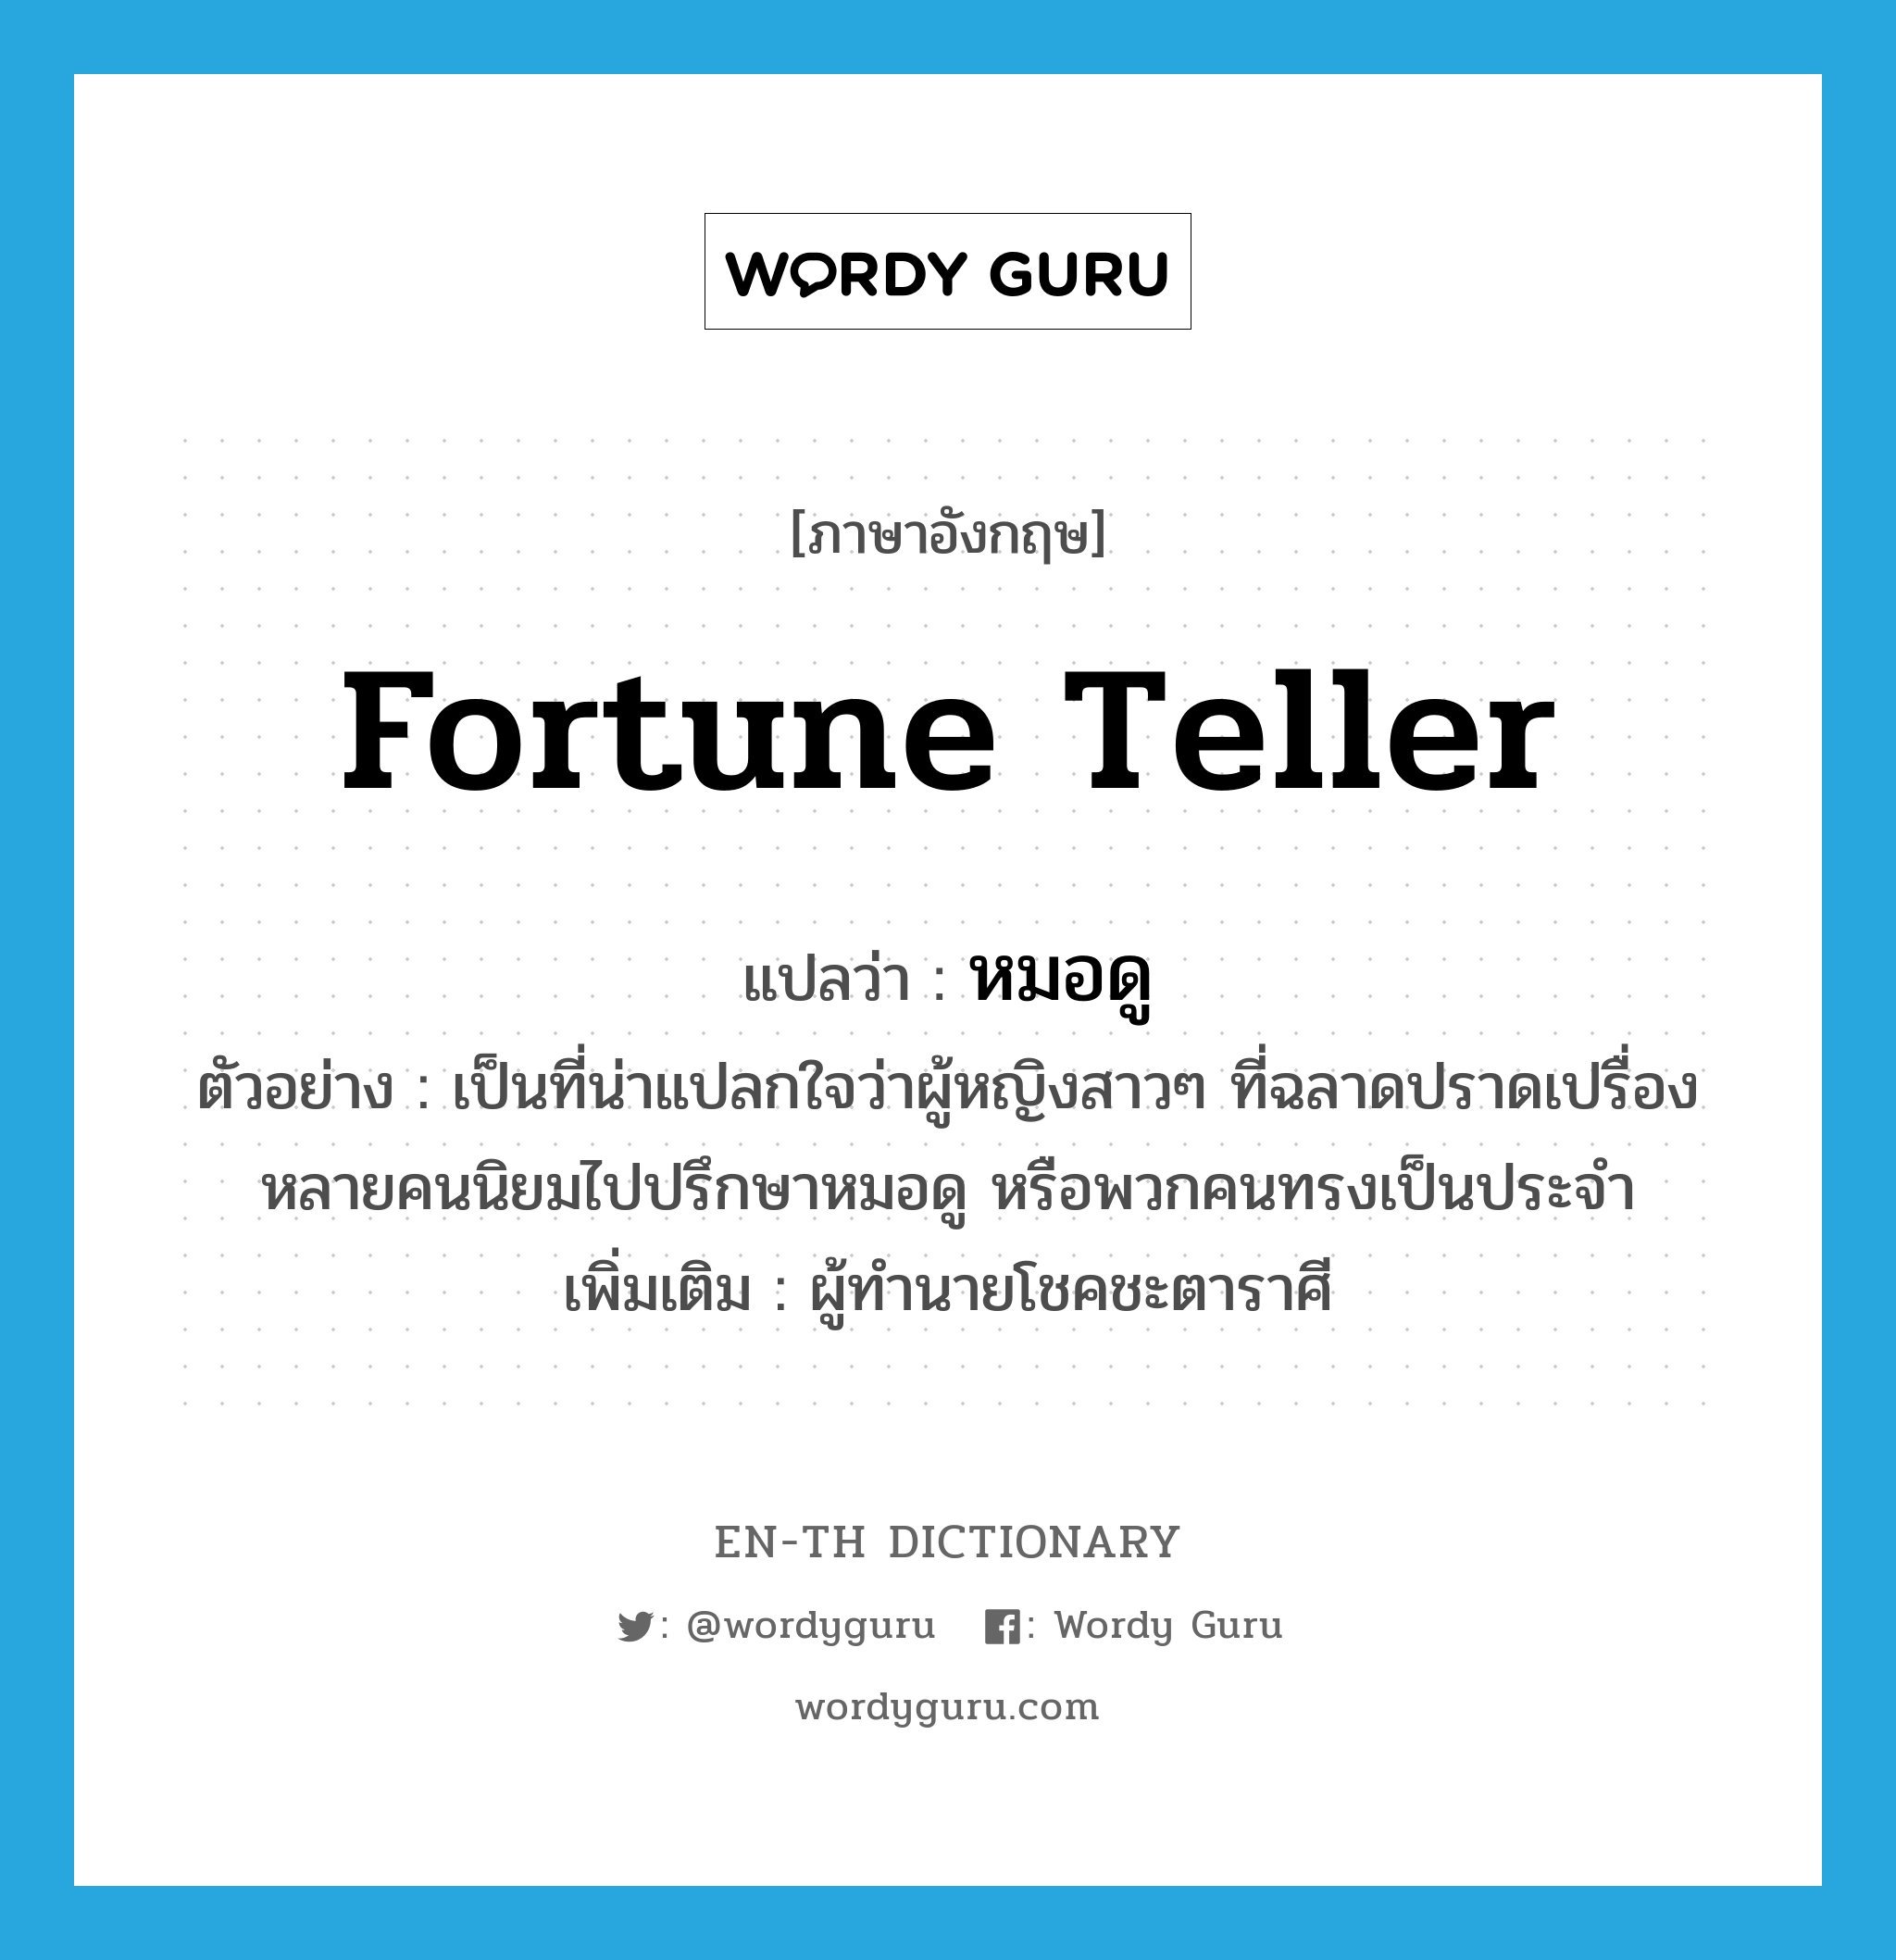 fortune teller แปลว่า?, คำศัพท์ภาษาอังกฤษ fortune teller แปลว่า หมอดู ประเภท N ตัวอย่าง เป็นที่น่าแปลกใจว่าผู้หญิงสาวๆ ที่ฉลาดปราดเปรื่องหลายคนนิยมไปปรึกษาหมอดู หรือพวกคนทรงเป็นประจำ เพิ่มเติม ผู้ทำนายโชคชะตาราศี หมวด N